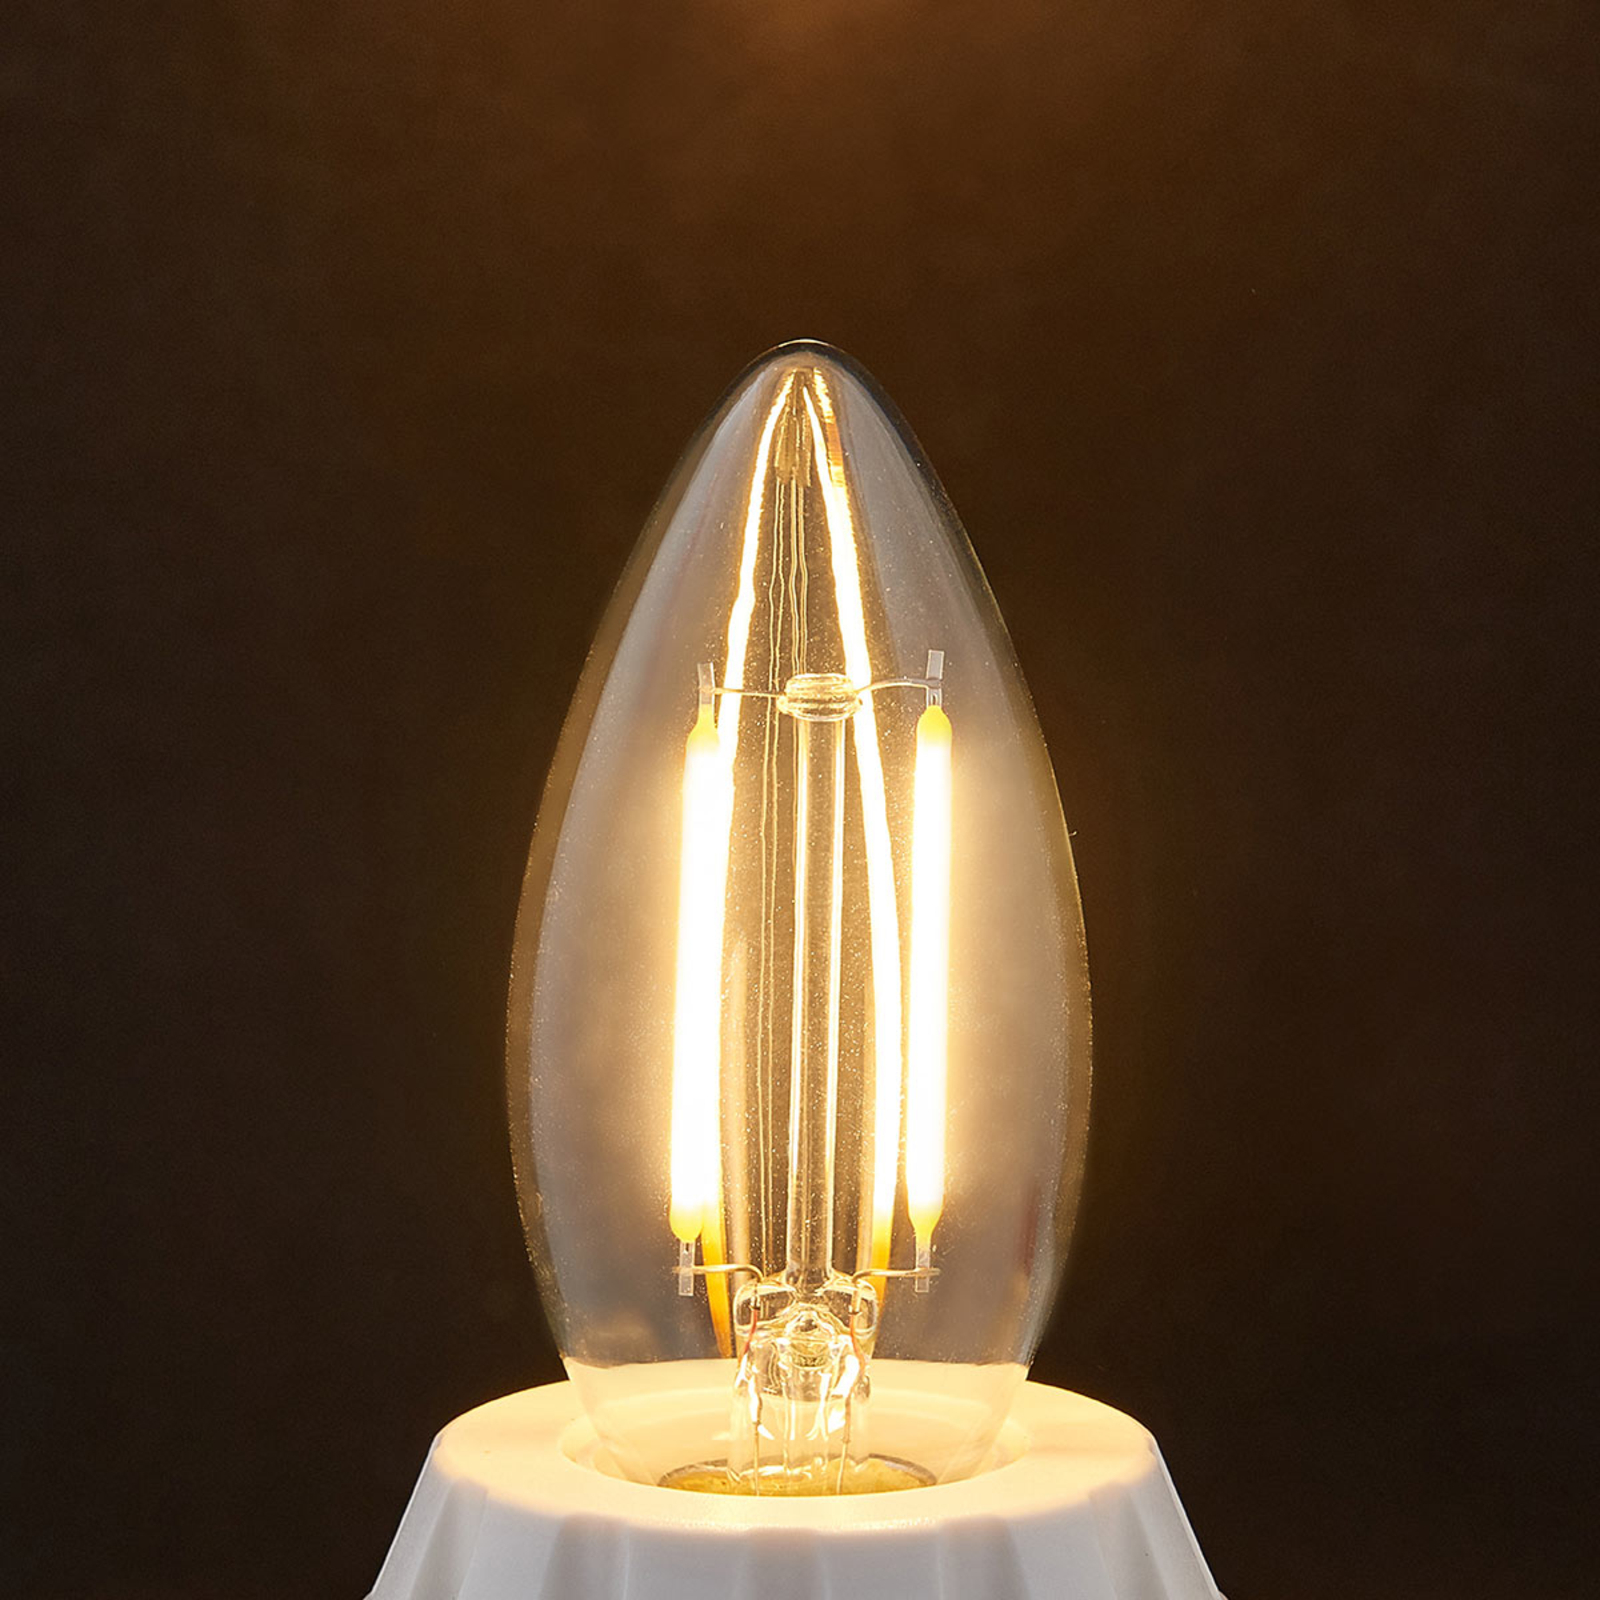 E14 LED žárovka svíčka Filament 2 W, čirá, 2 700 K